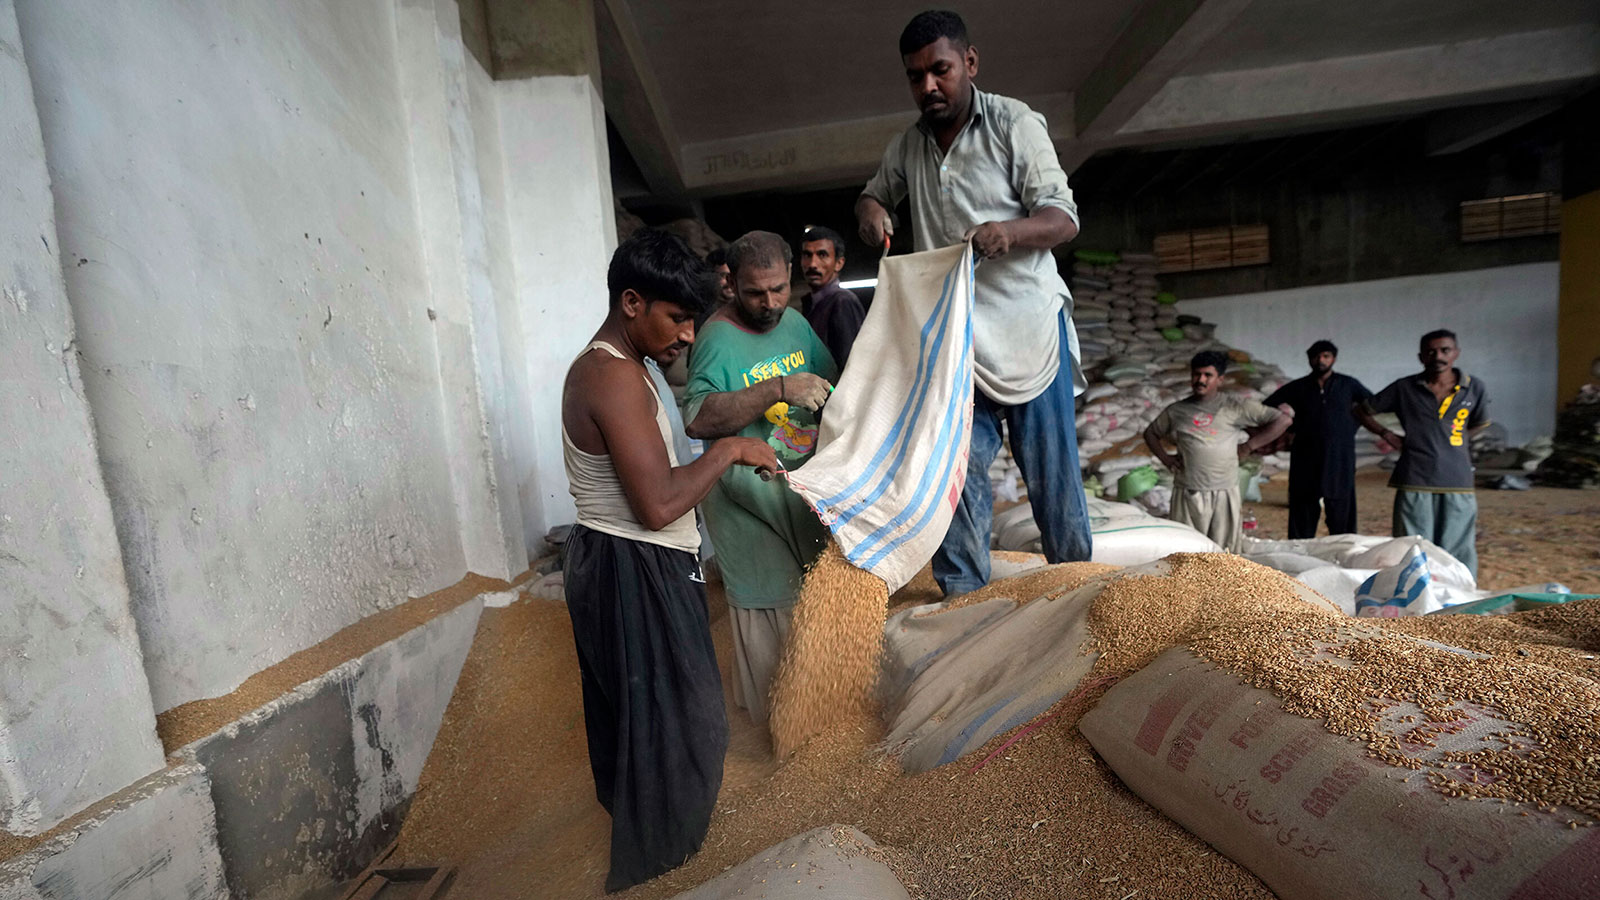 Trabajadores paquistaníes clasifican el trigo en un almacén en Karachi, Pakistán, el 26 de julio. (Fareed Khan/AP/FILE)